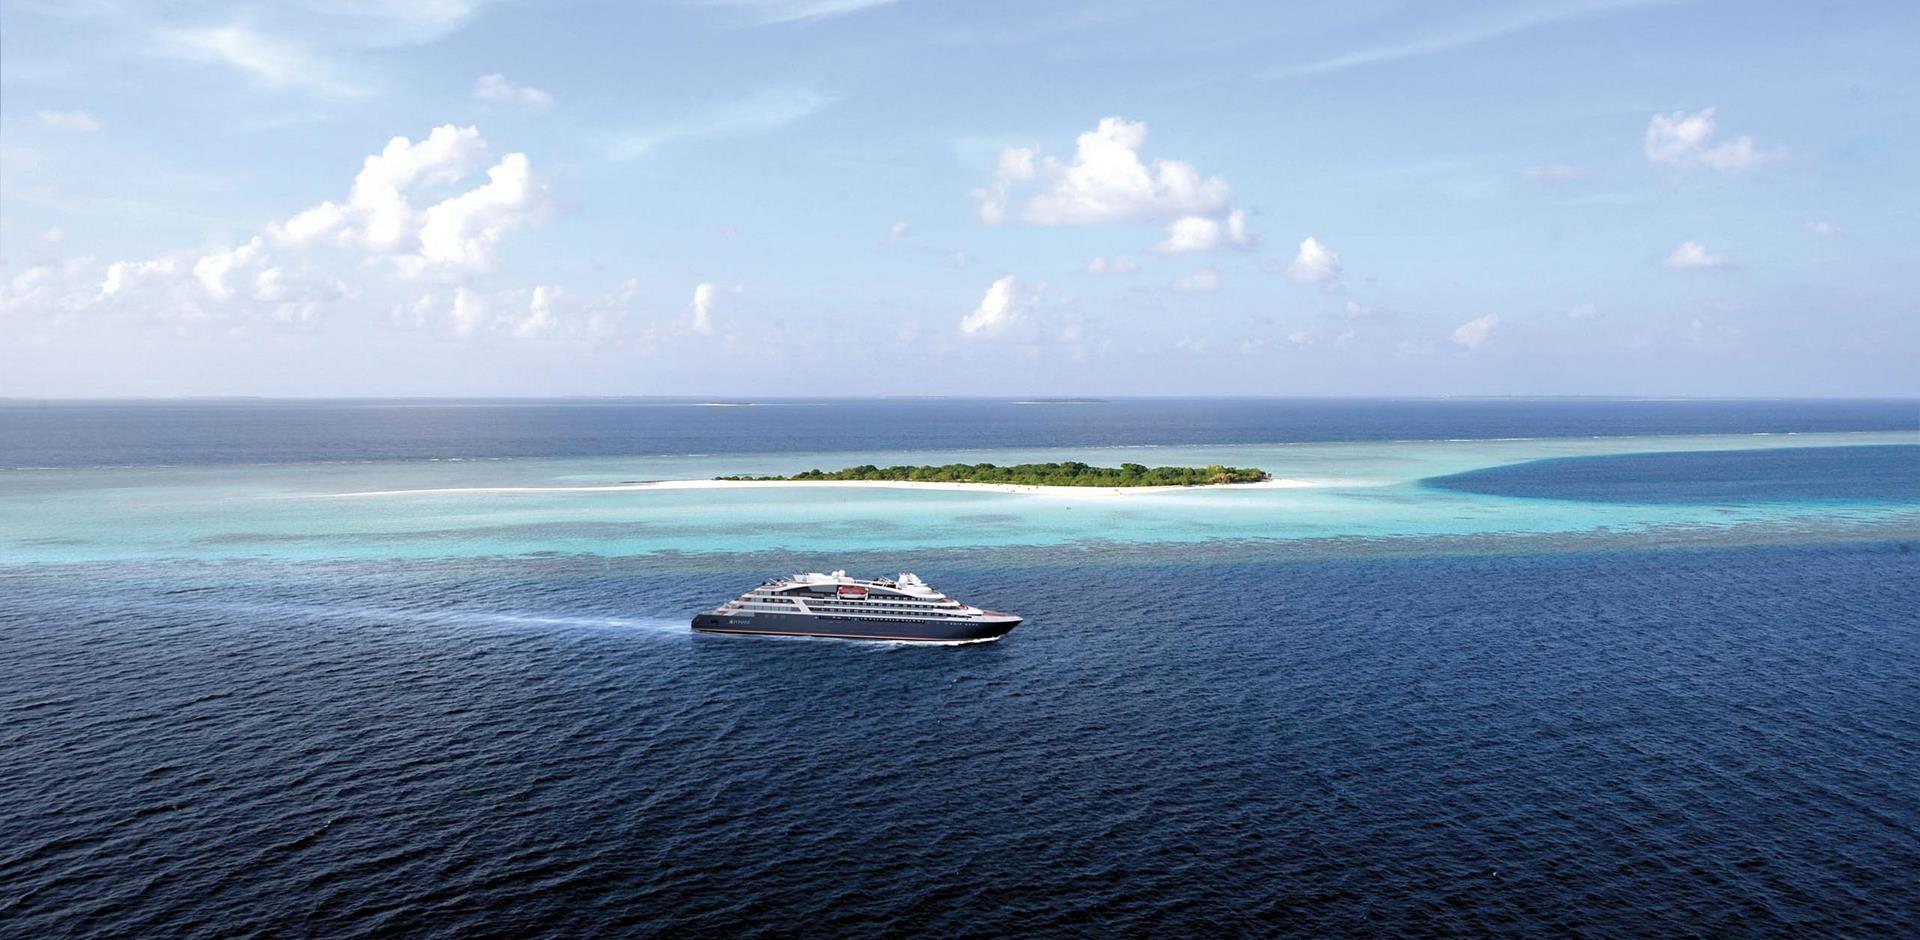 Le Bougainville luxury cruise ship